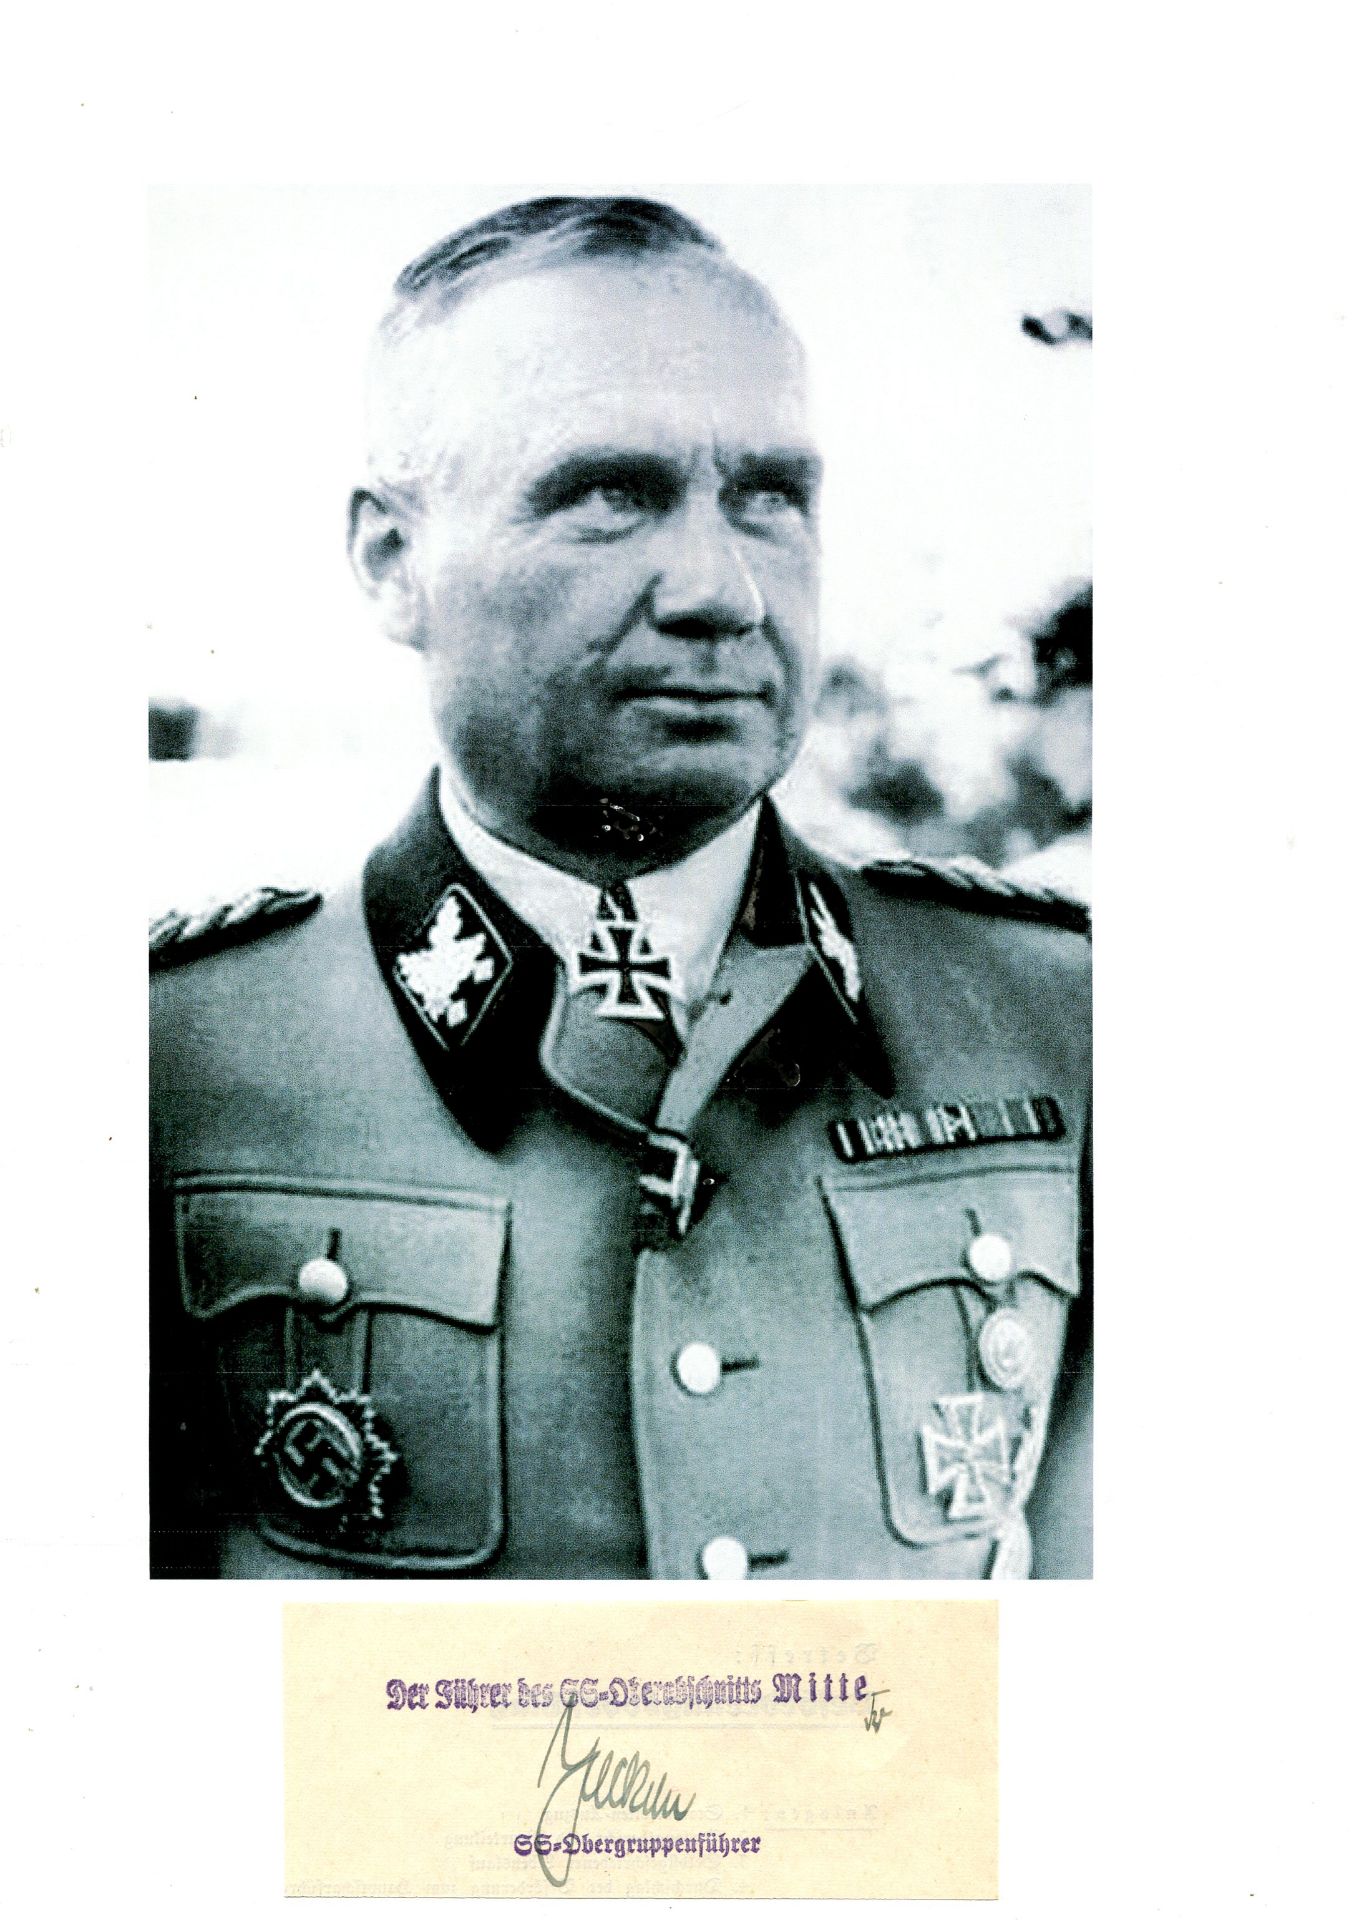 JECKELN FRIEDRICH: (1895-1946) German SS-Obergruppenfuhrer of World War II who served as a Higher